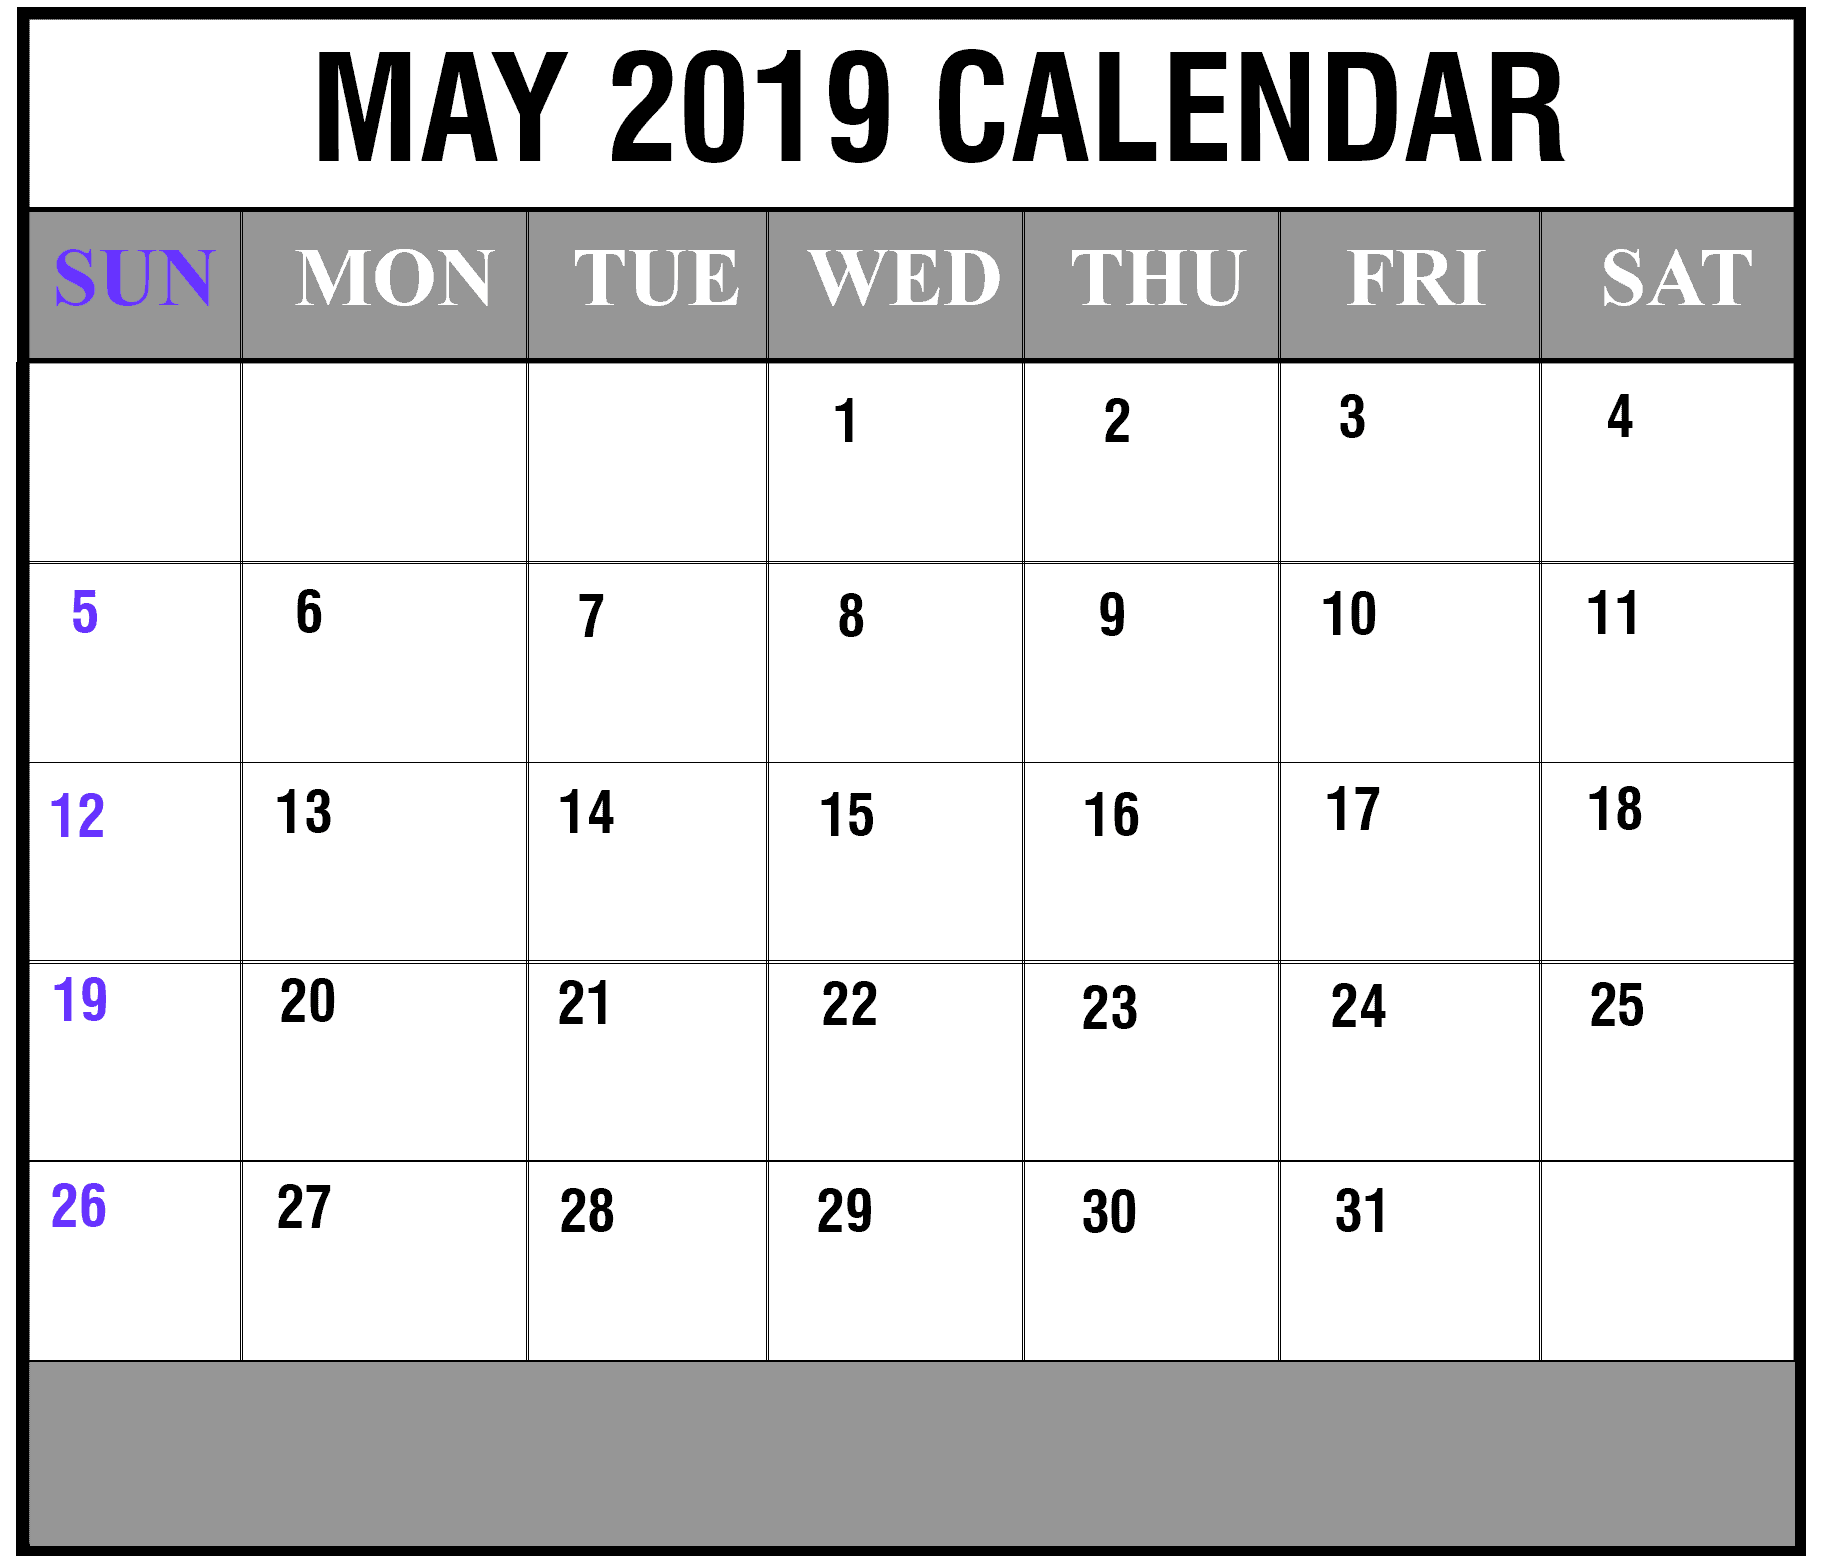 May 2019 calendar 9